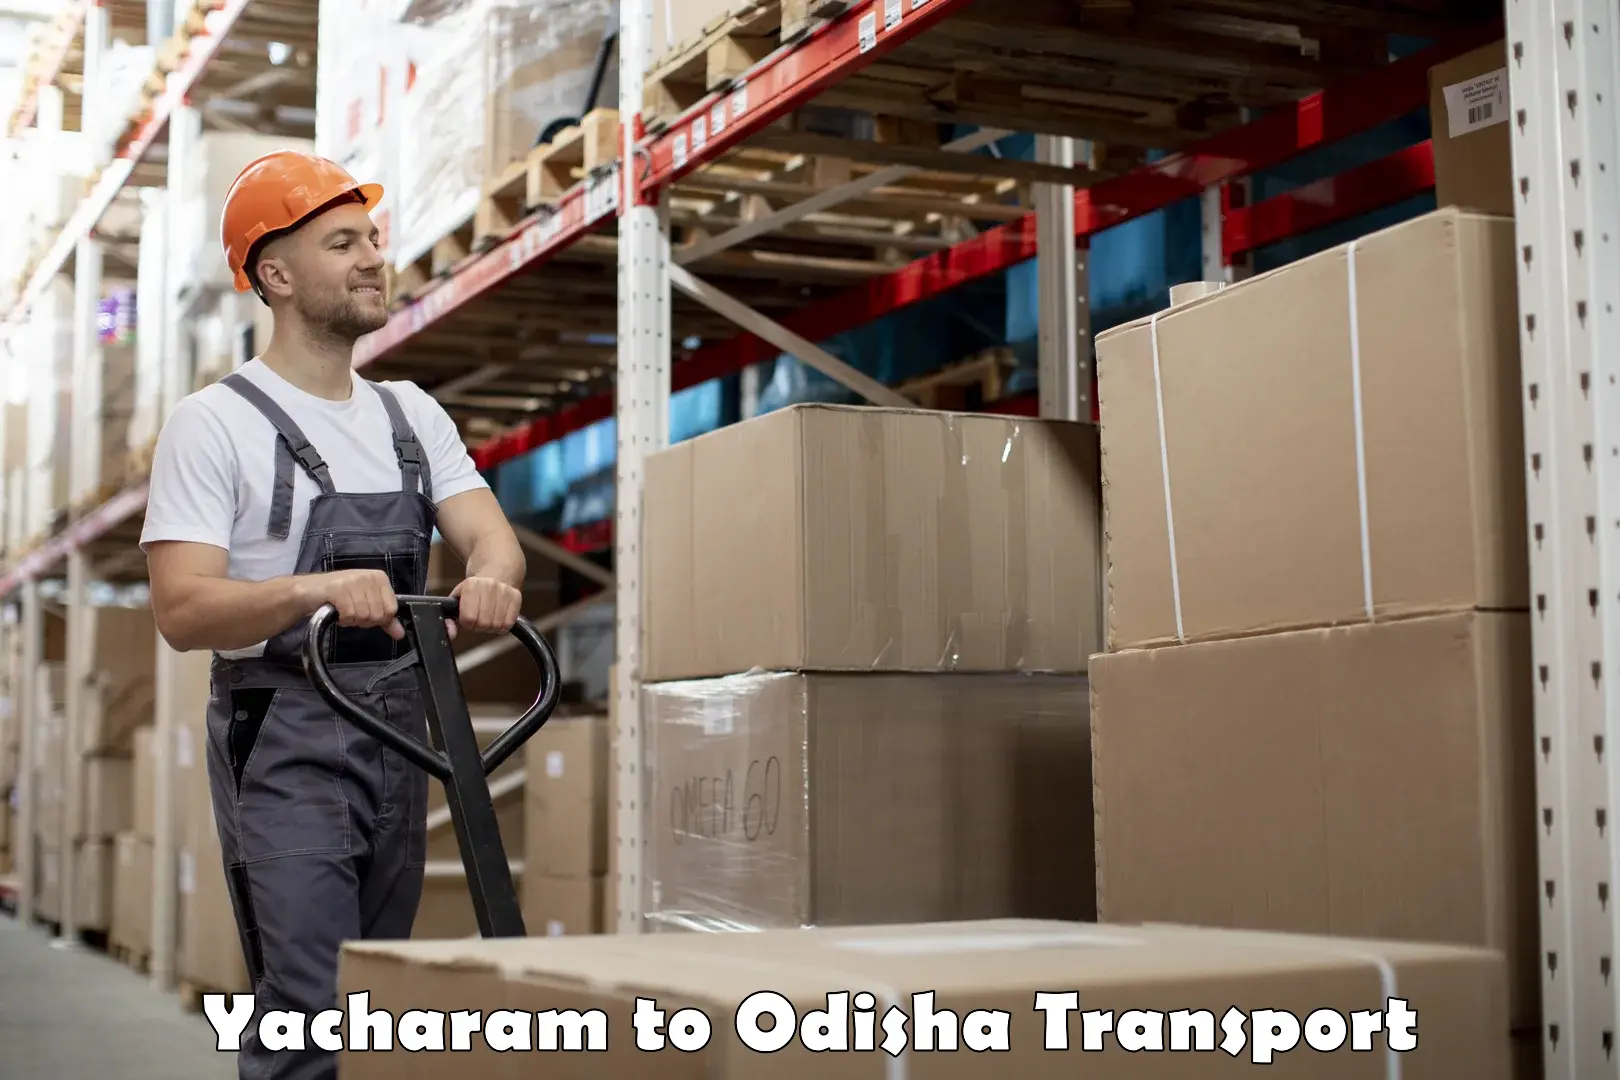 Furniture transport service Yacharam to Kantamal